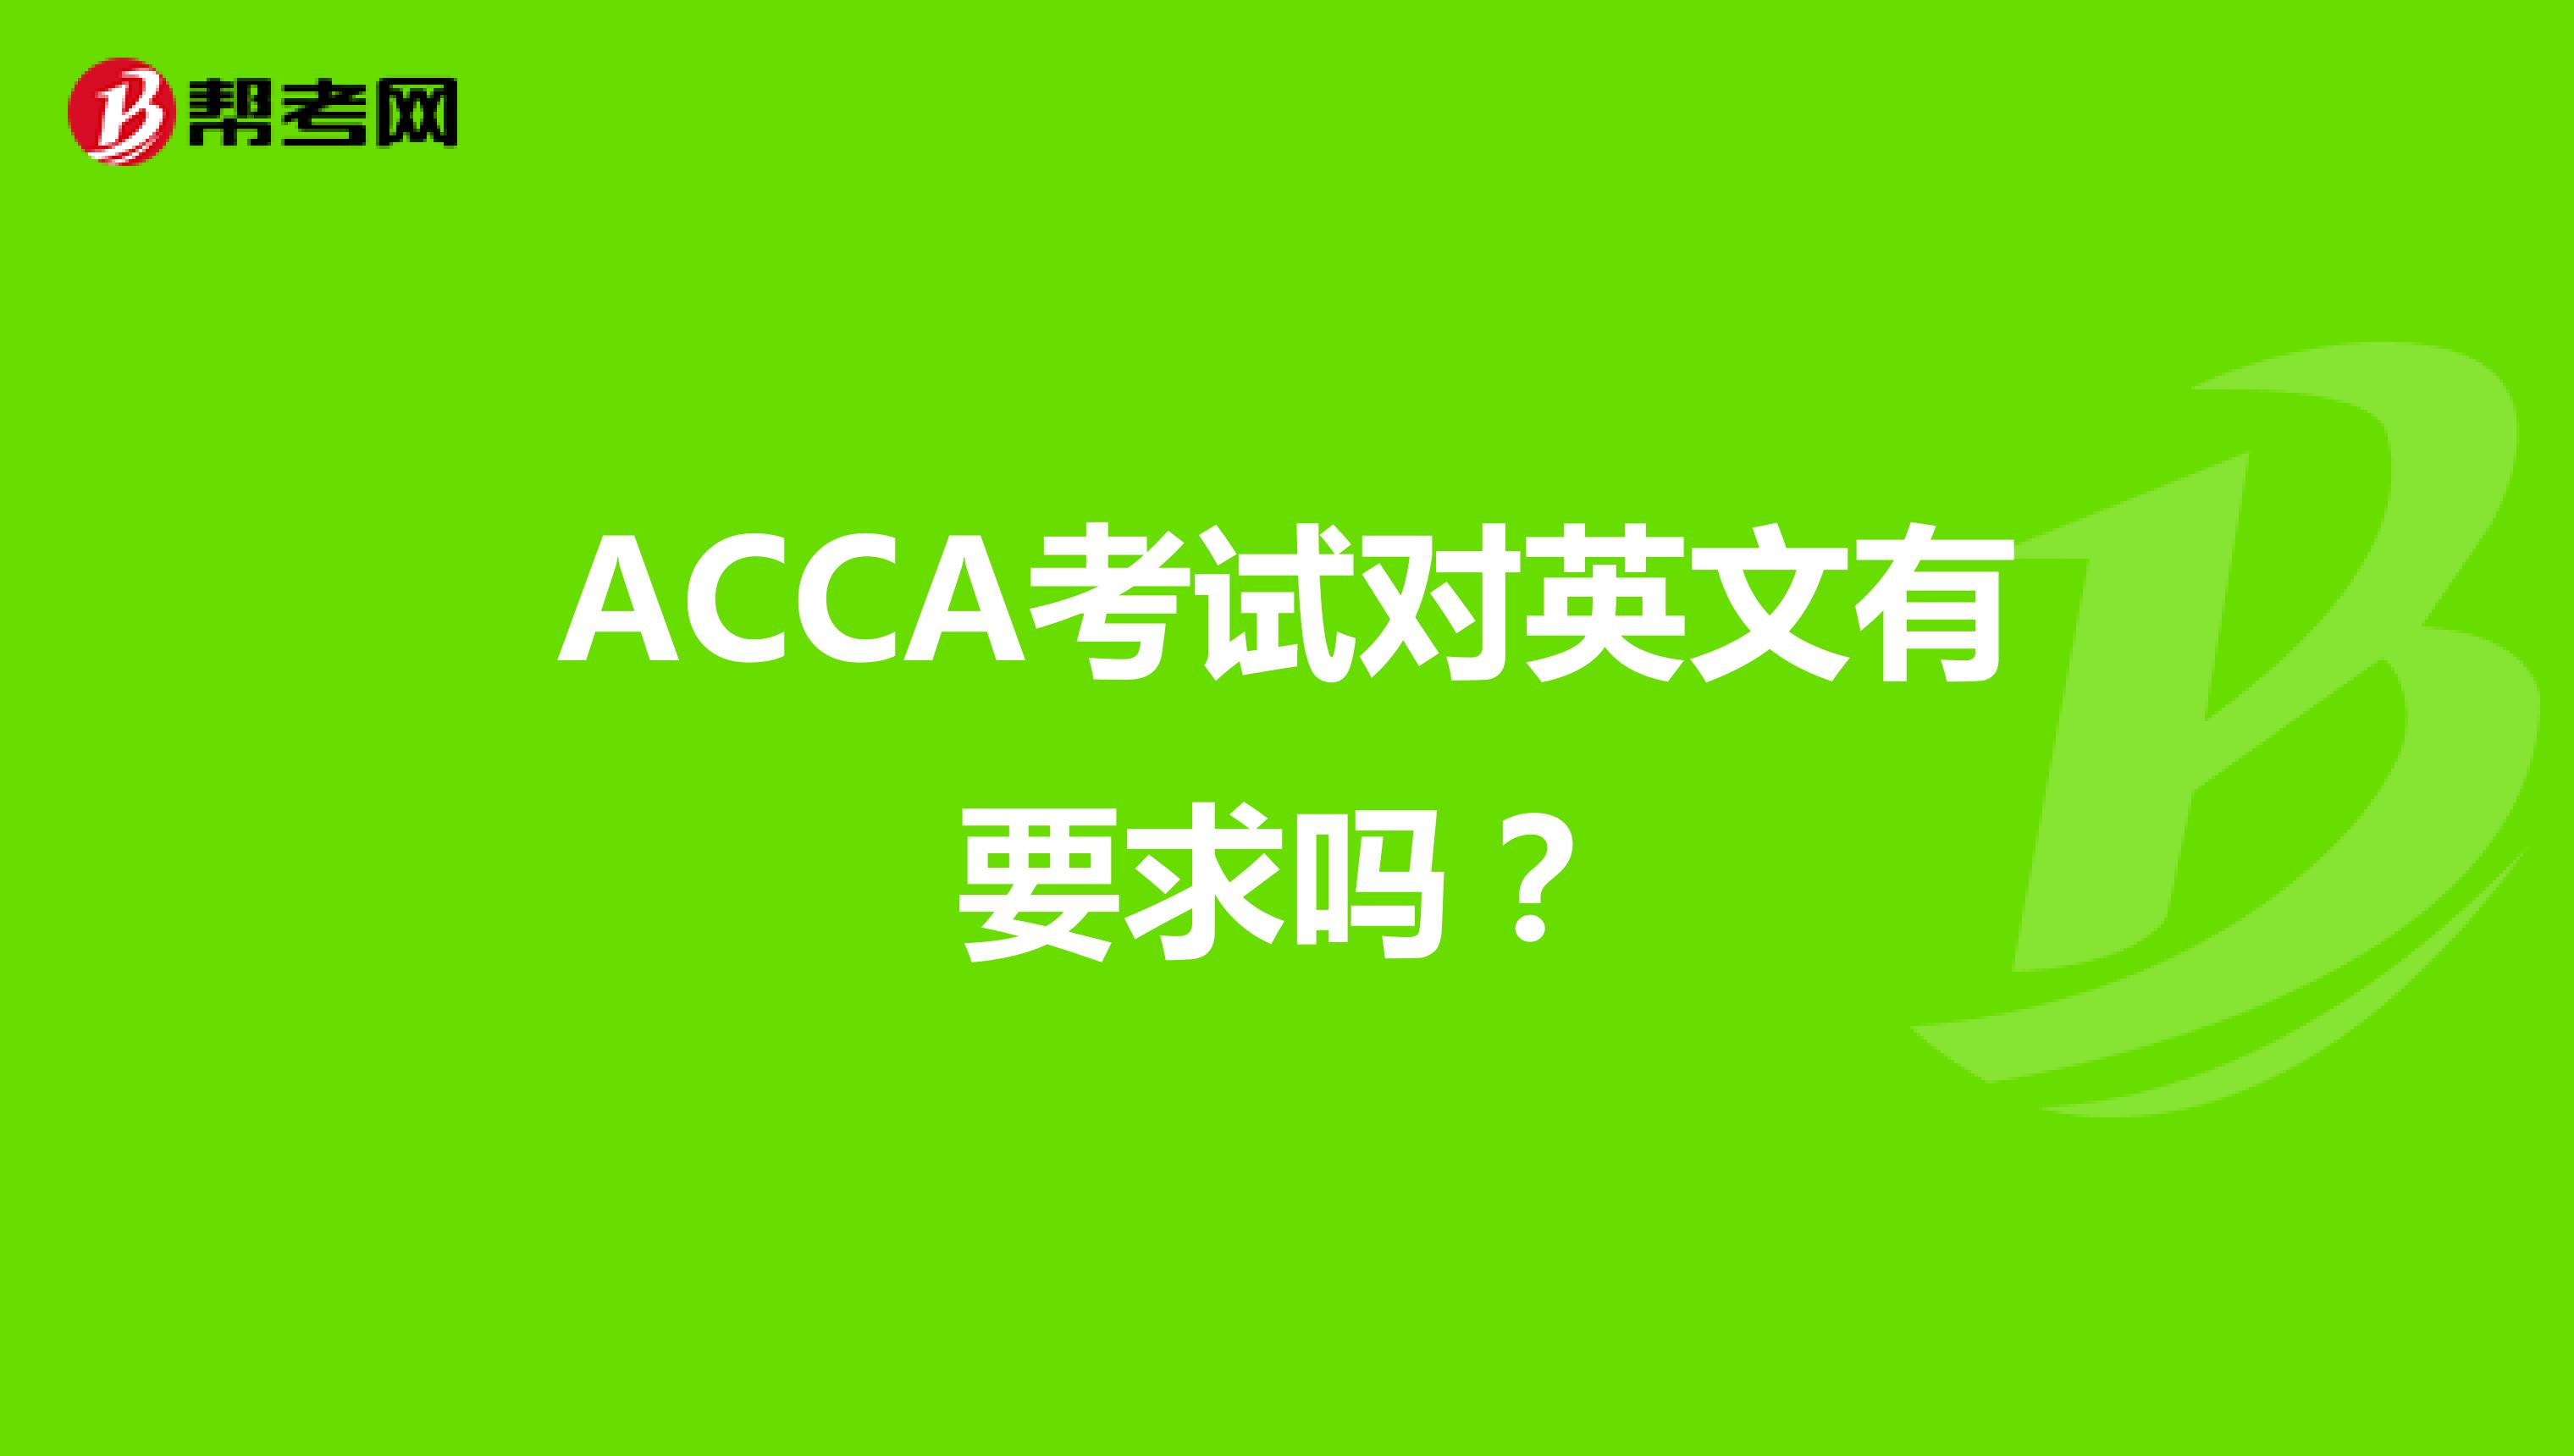 ACCA考试对英文有要求吗？